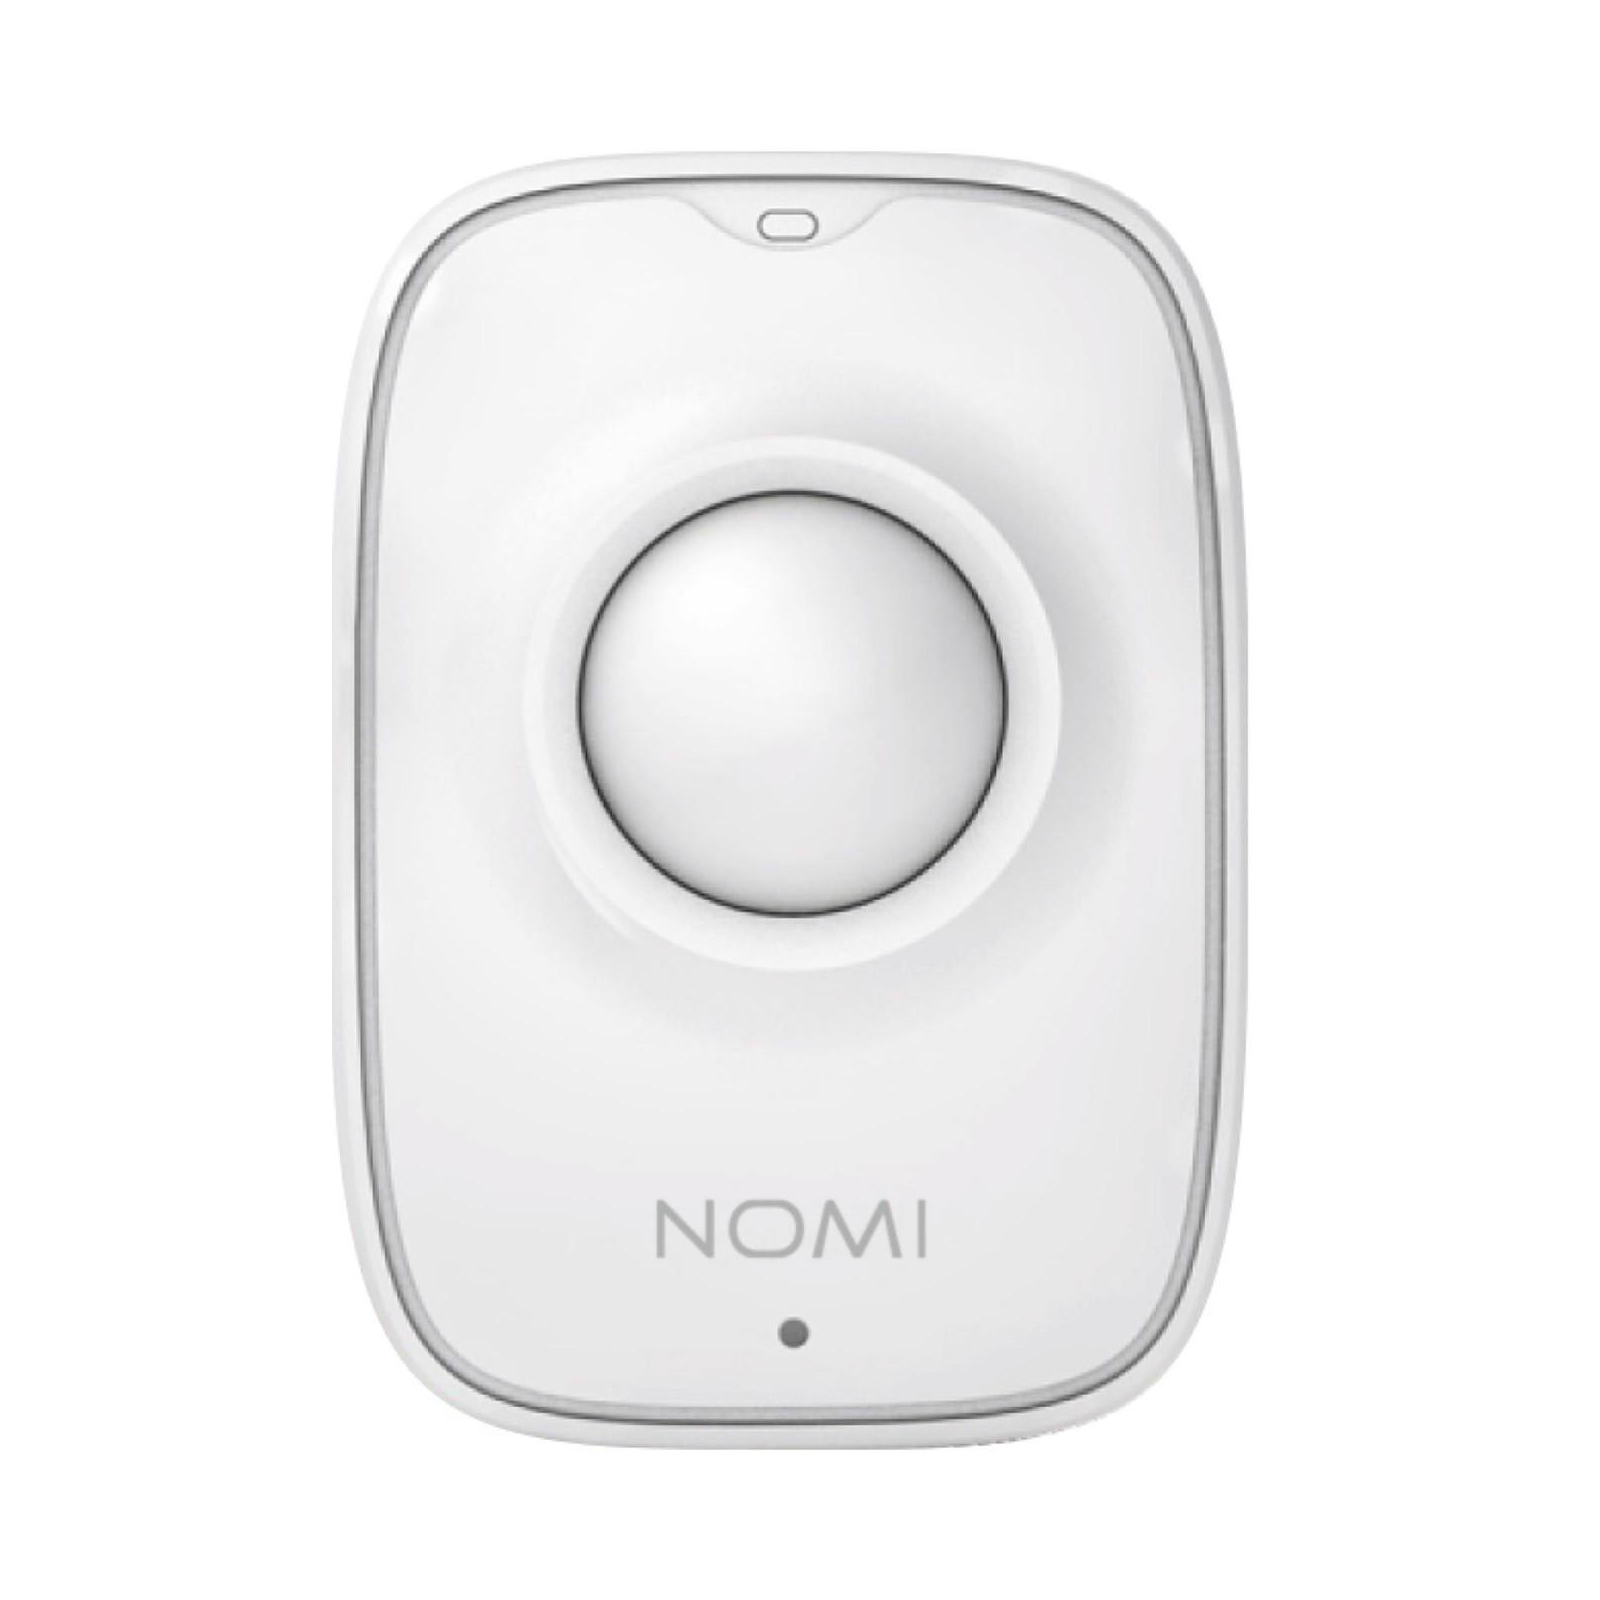 Комплект охранной сигнализации Nomi набор датчиков Smart Home (329732) изображение 2